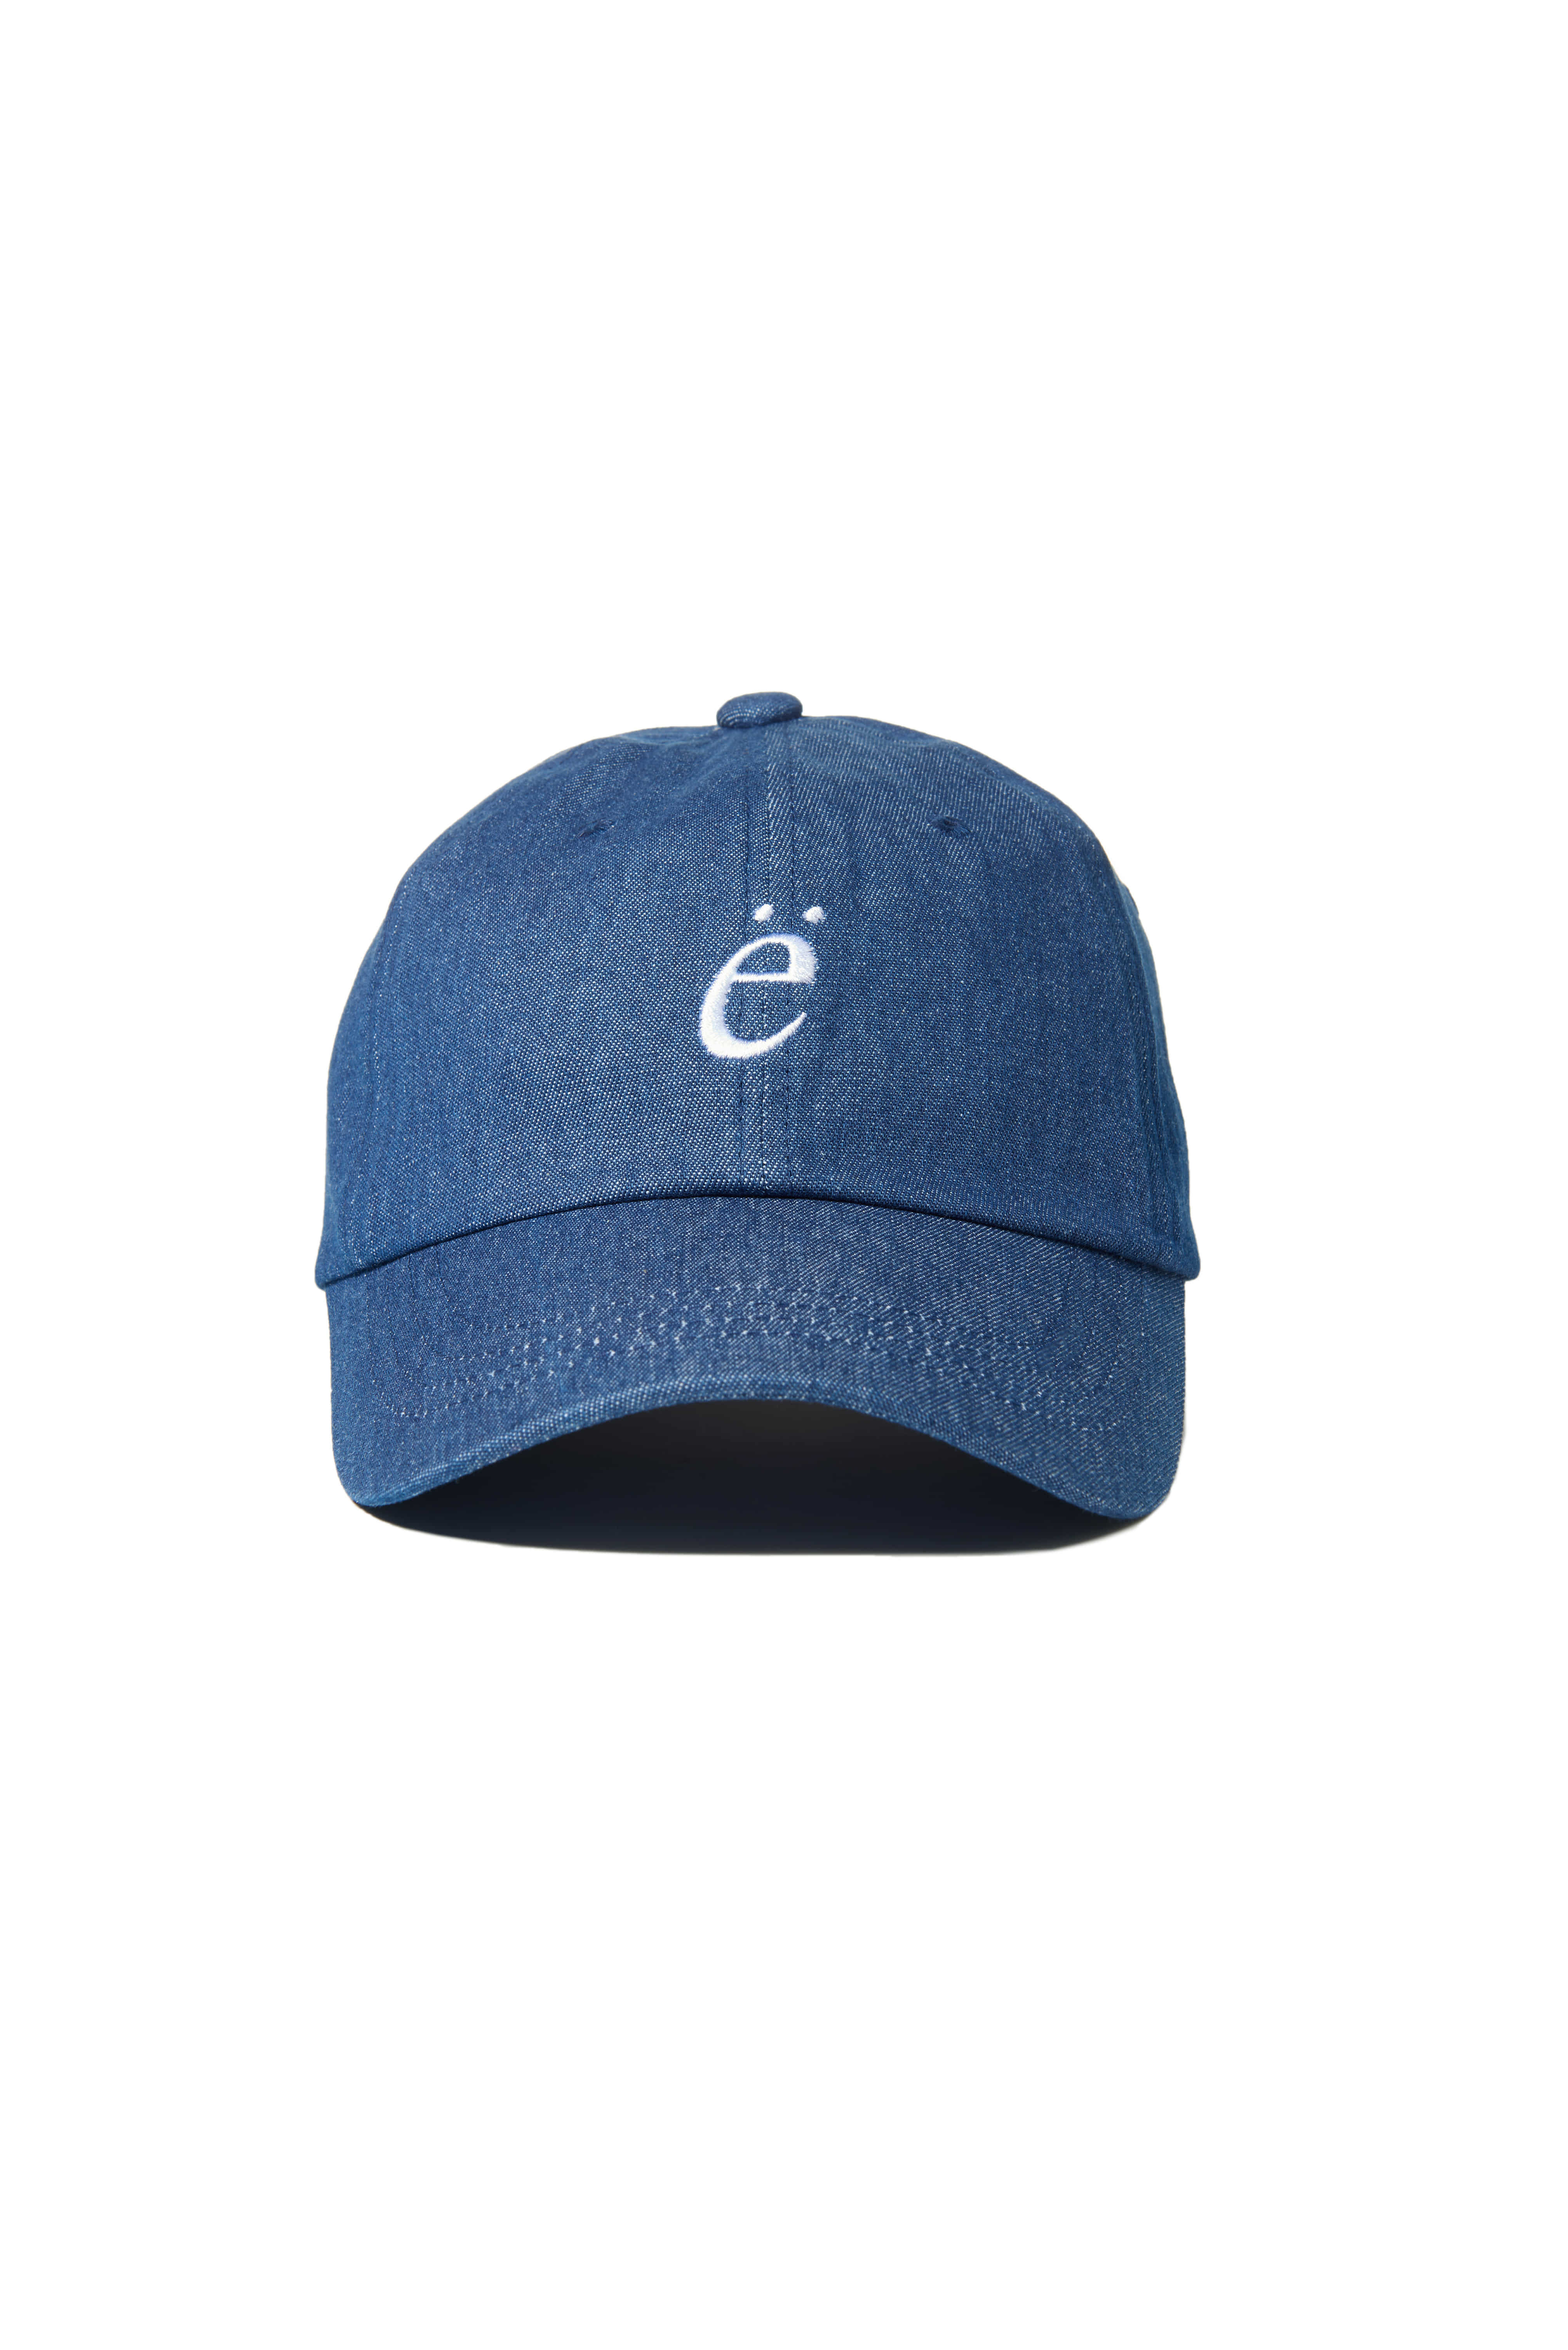 e_LOGO EMIS CAP-DARK BLUE JEAN